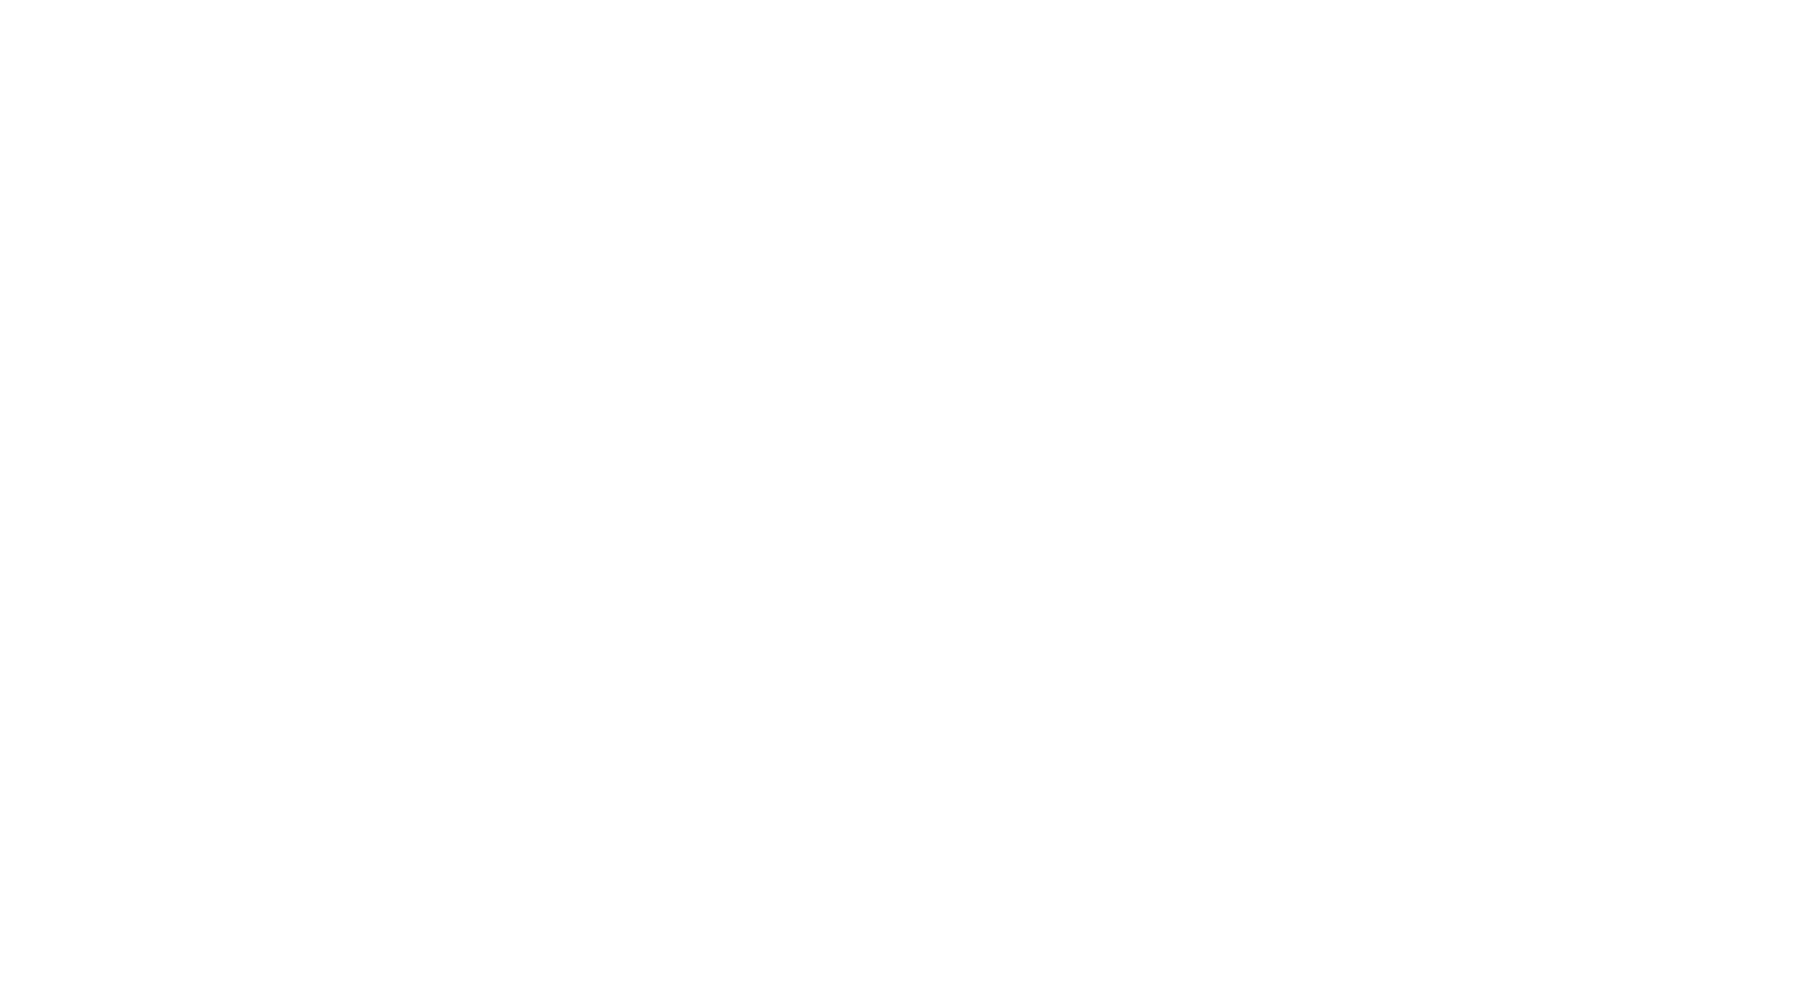 The Co$t of Fun